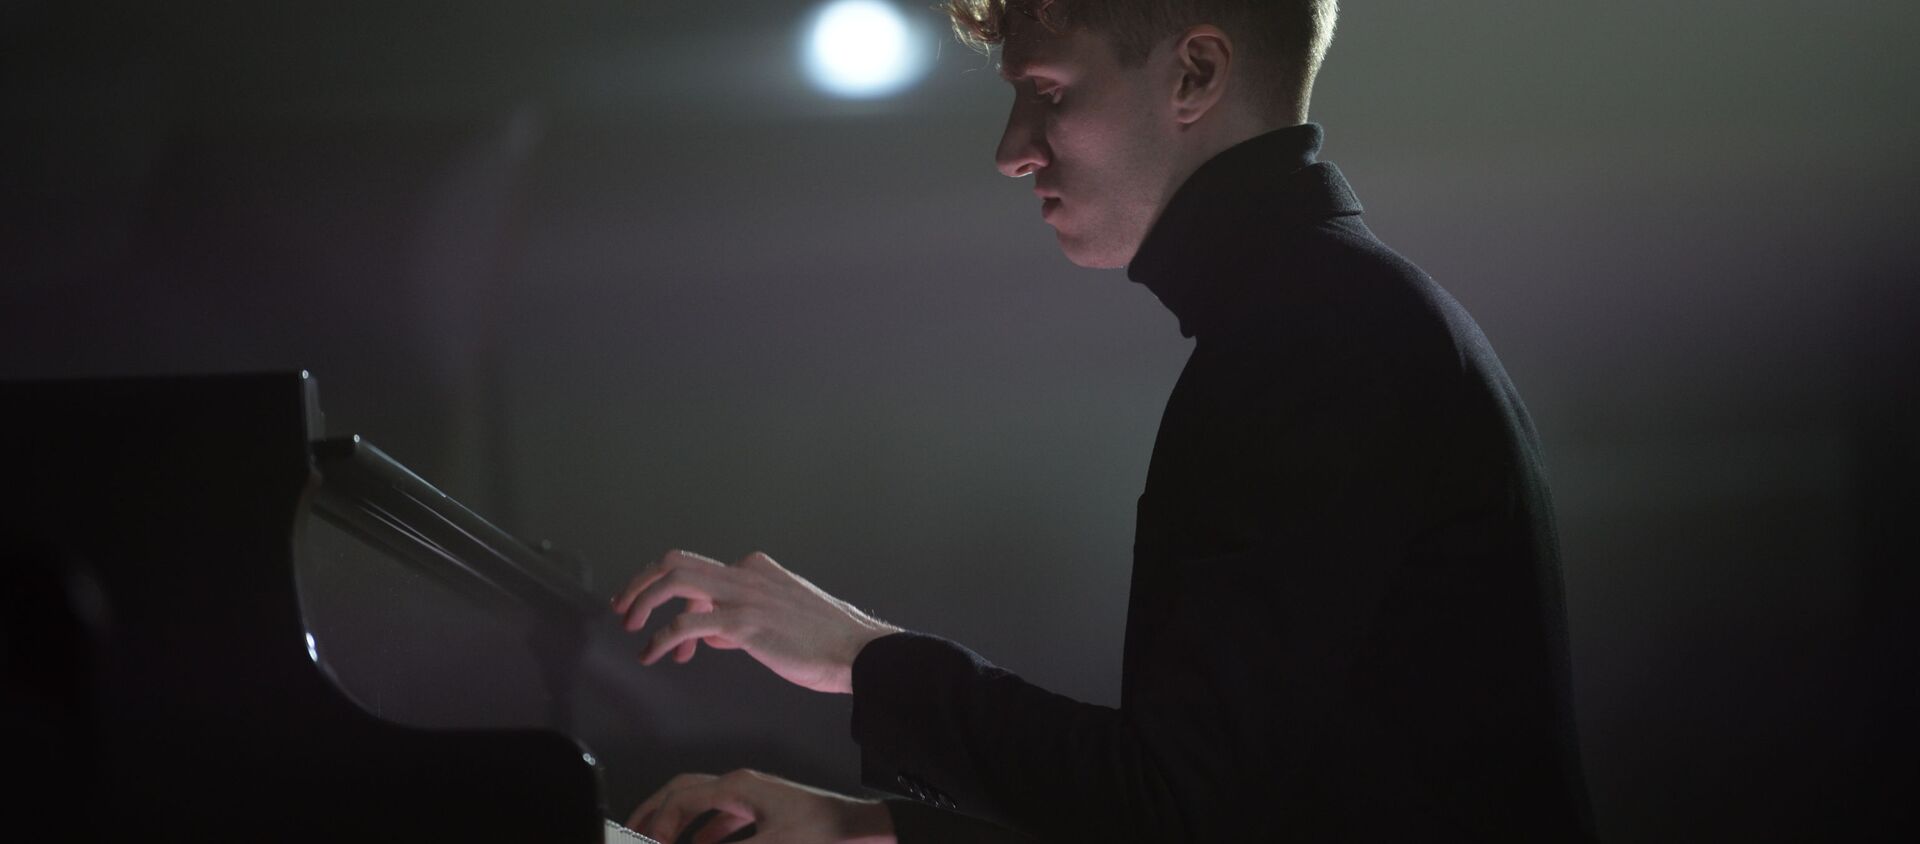 Пианист Кирилл Рихтер выступает на концерте в честь 80-летия Стива Райха в рамках проекта Sound Up в Москве - Sputnik Узбекистан, 1920, 04.03.2021